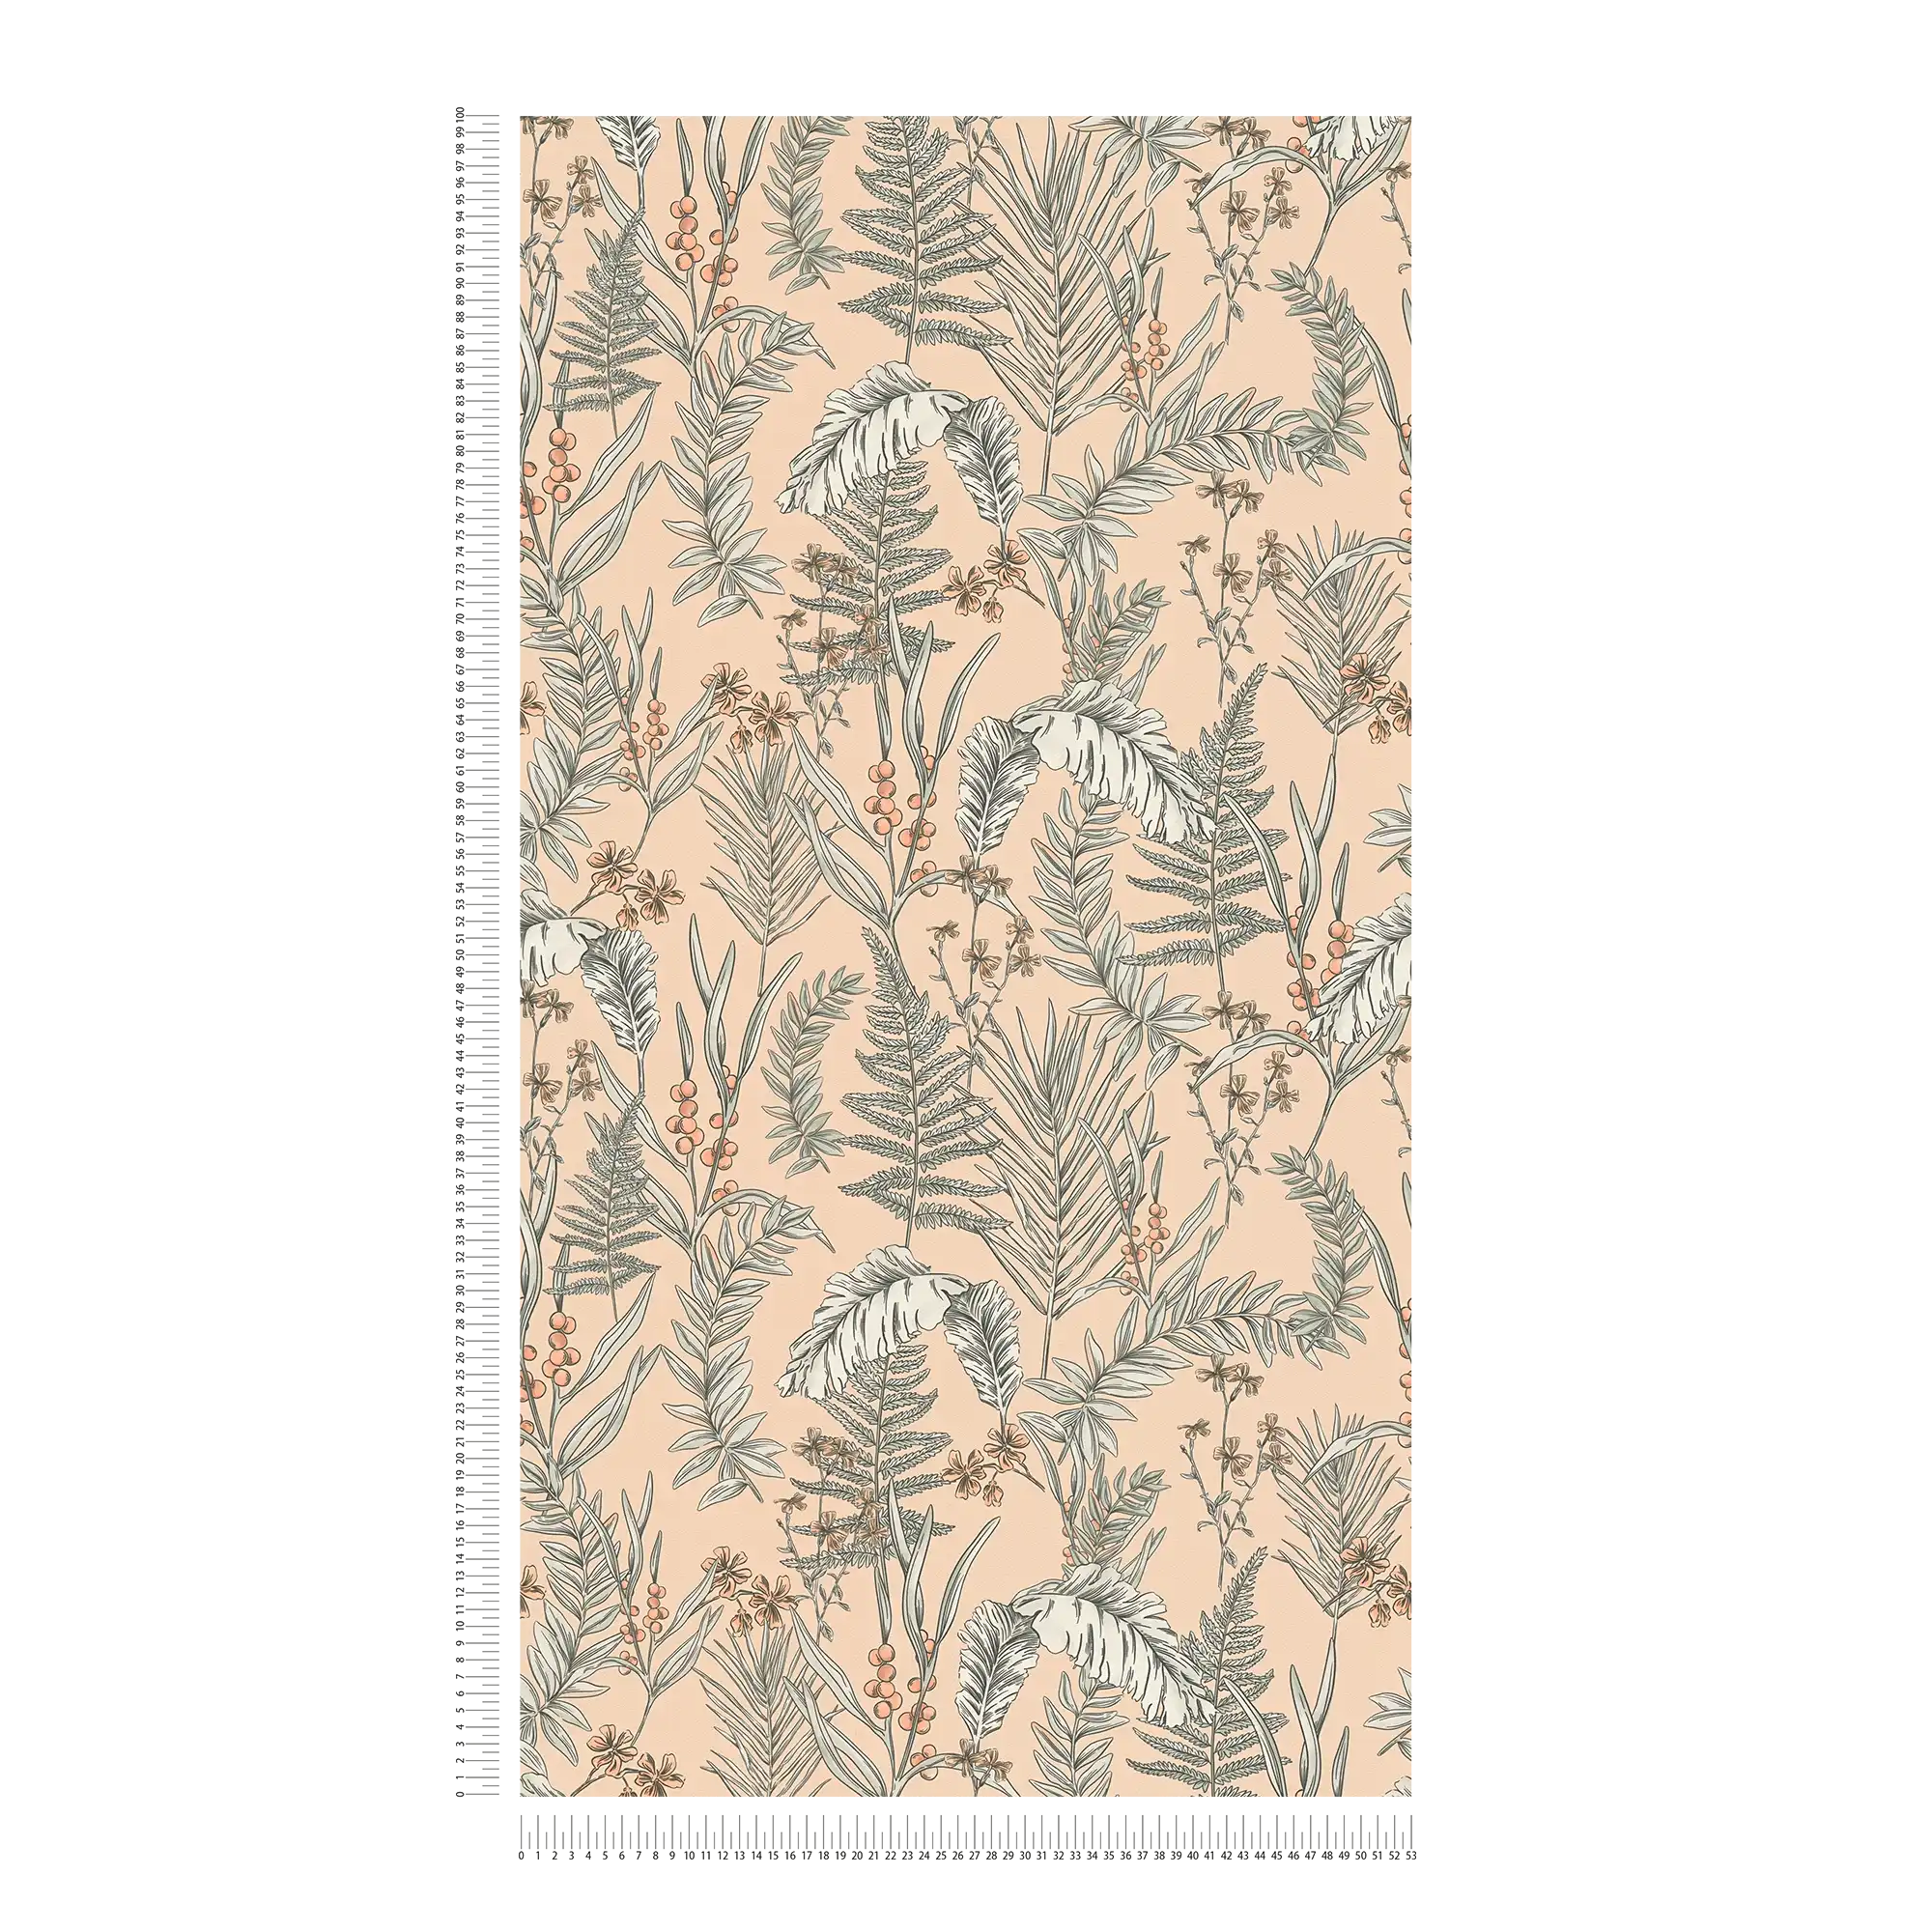             papier peint en papier moderne Floral avec fleurs & feuilles structuré - rose, beige, blanc
        